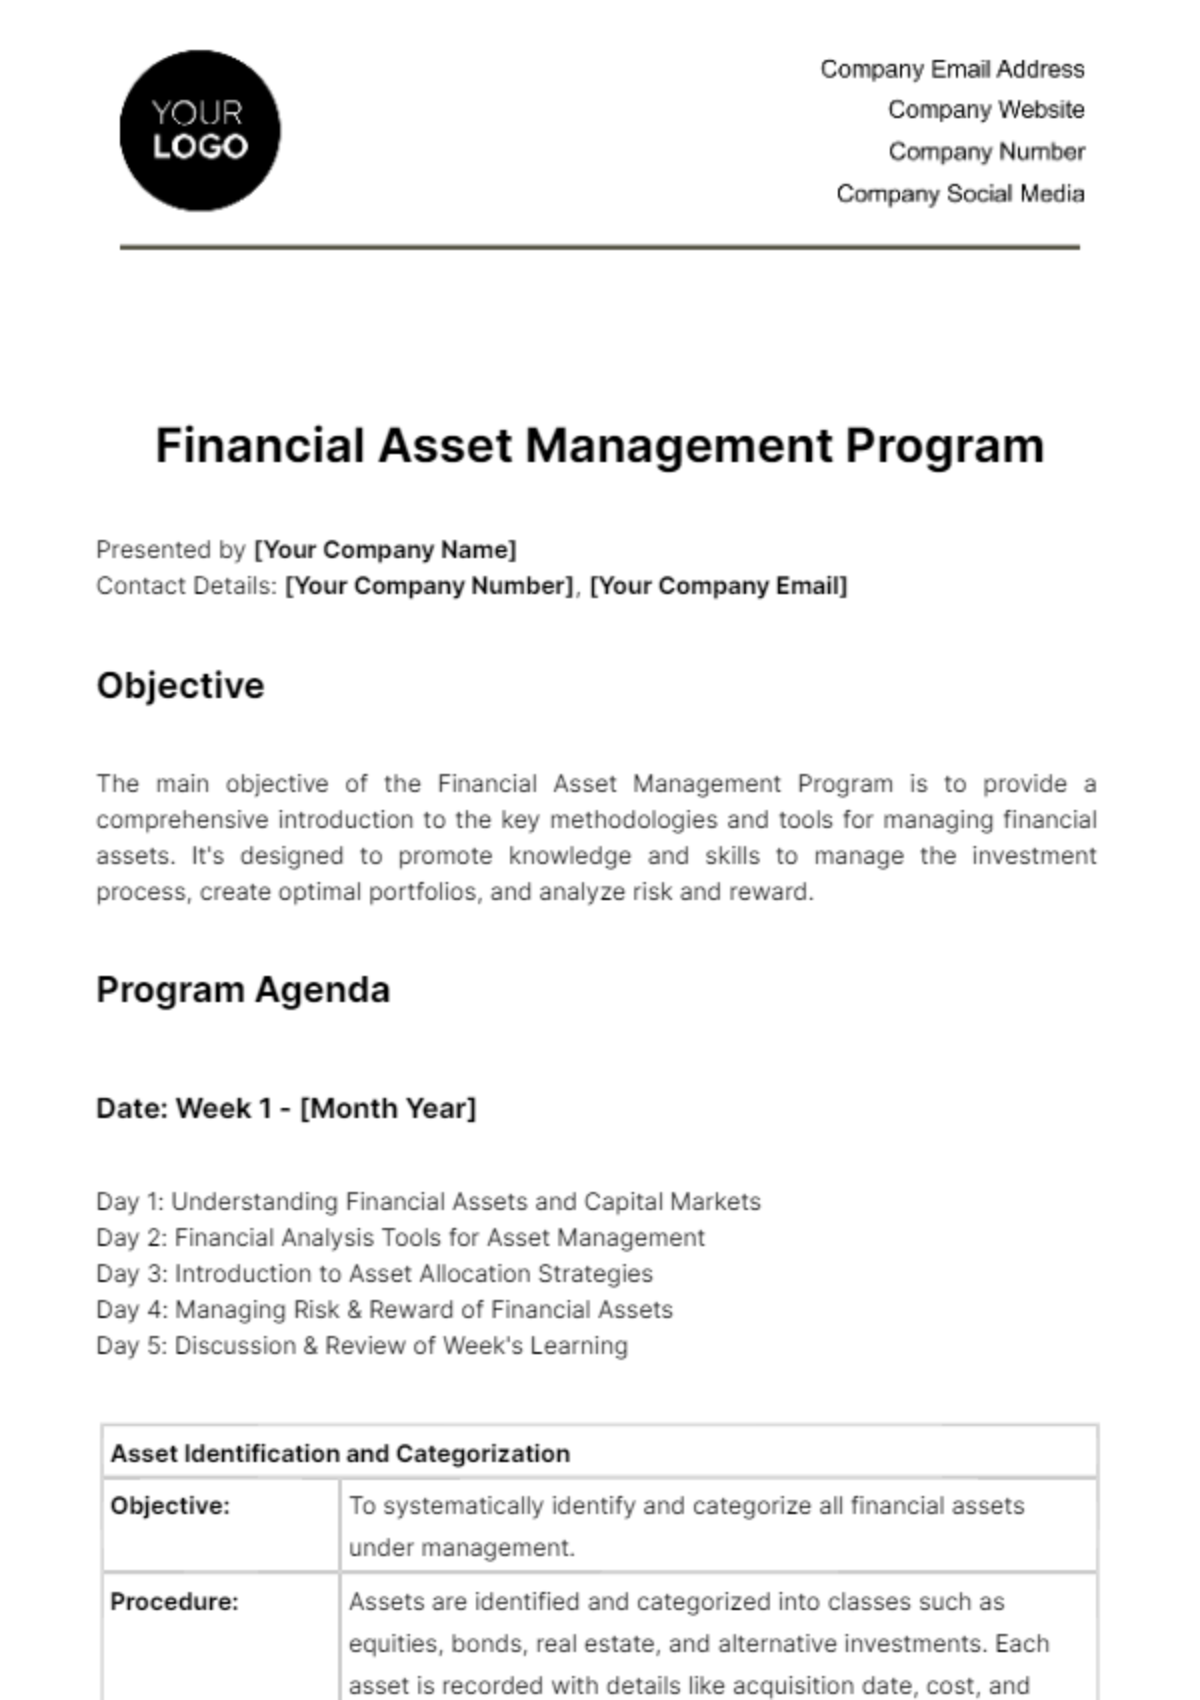 Financial Asset Management Program Template